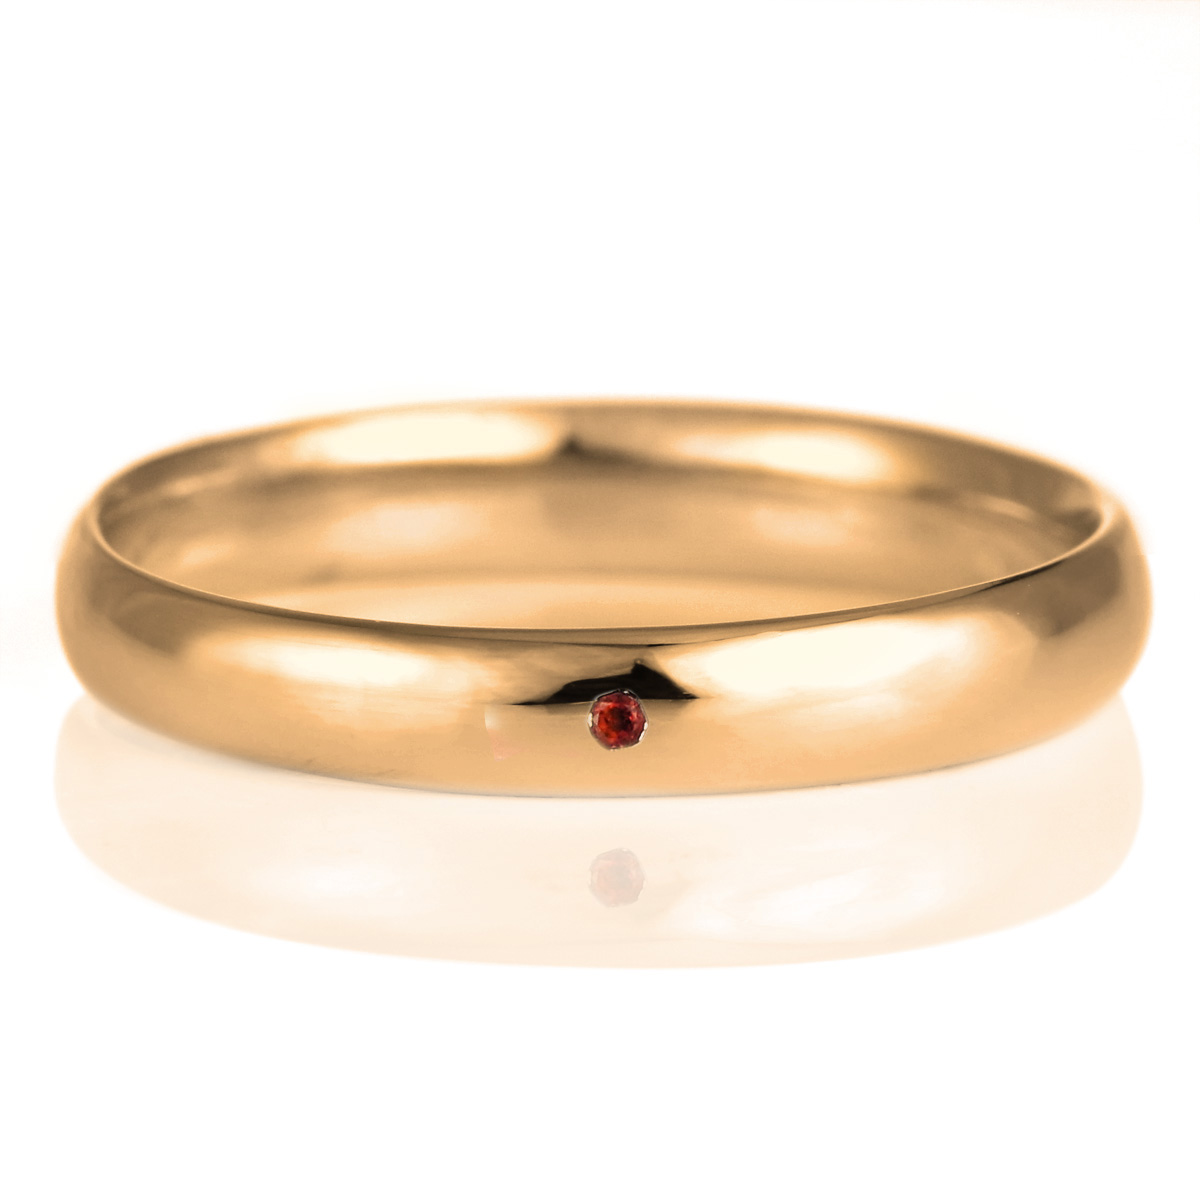 結婚指輪 マリッジリング 18金 ピンクゴールド 甲丸 天然石 ガーネット